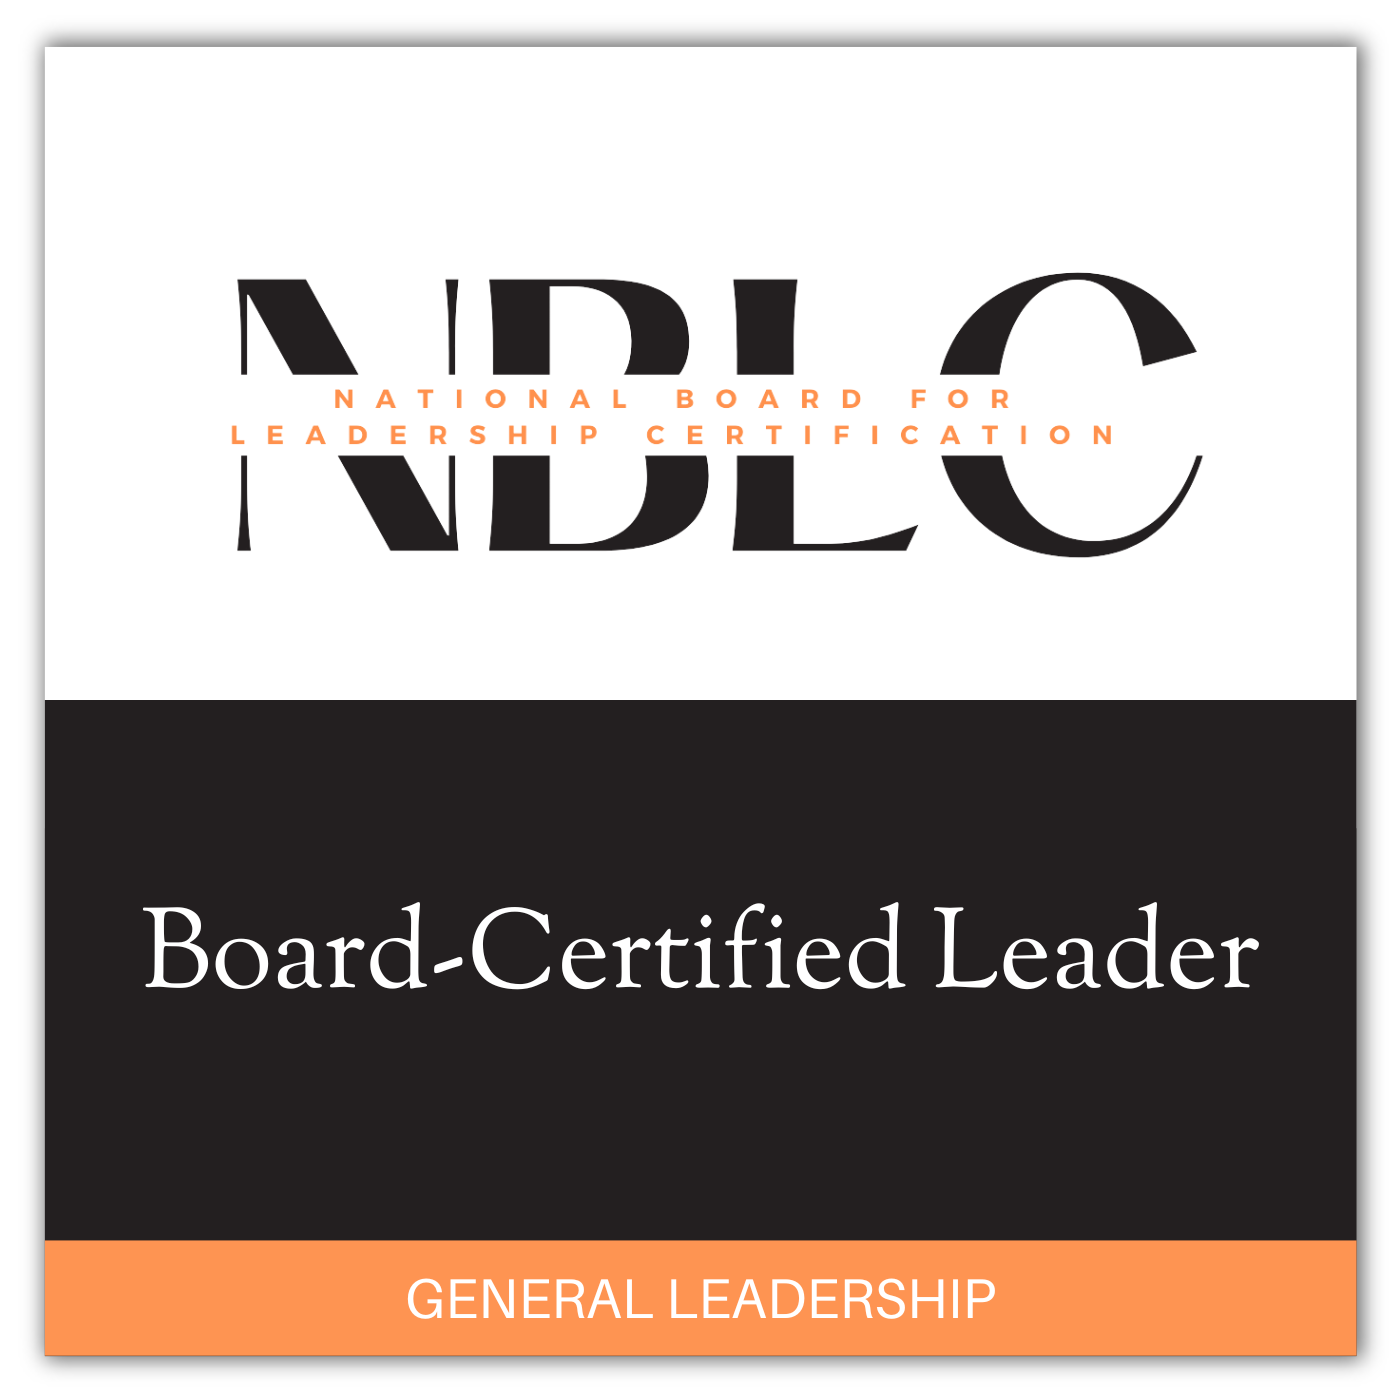 Board-Certified Leader